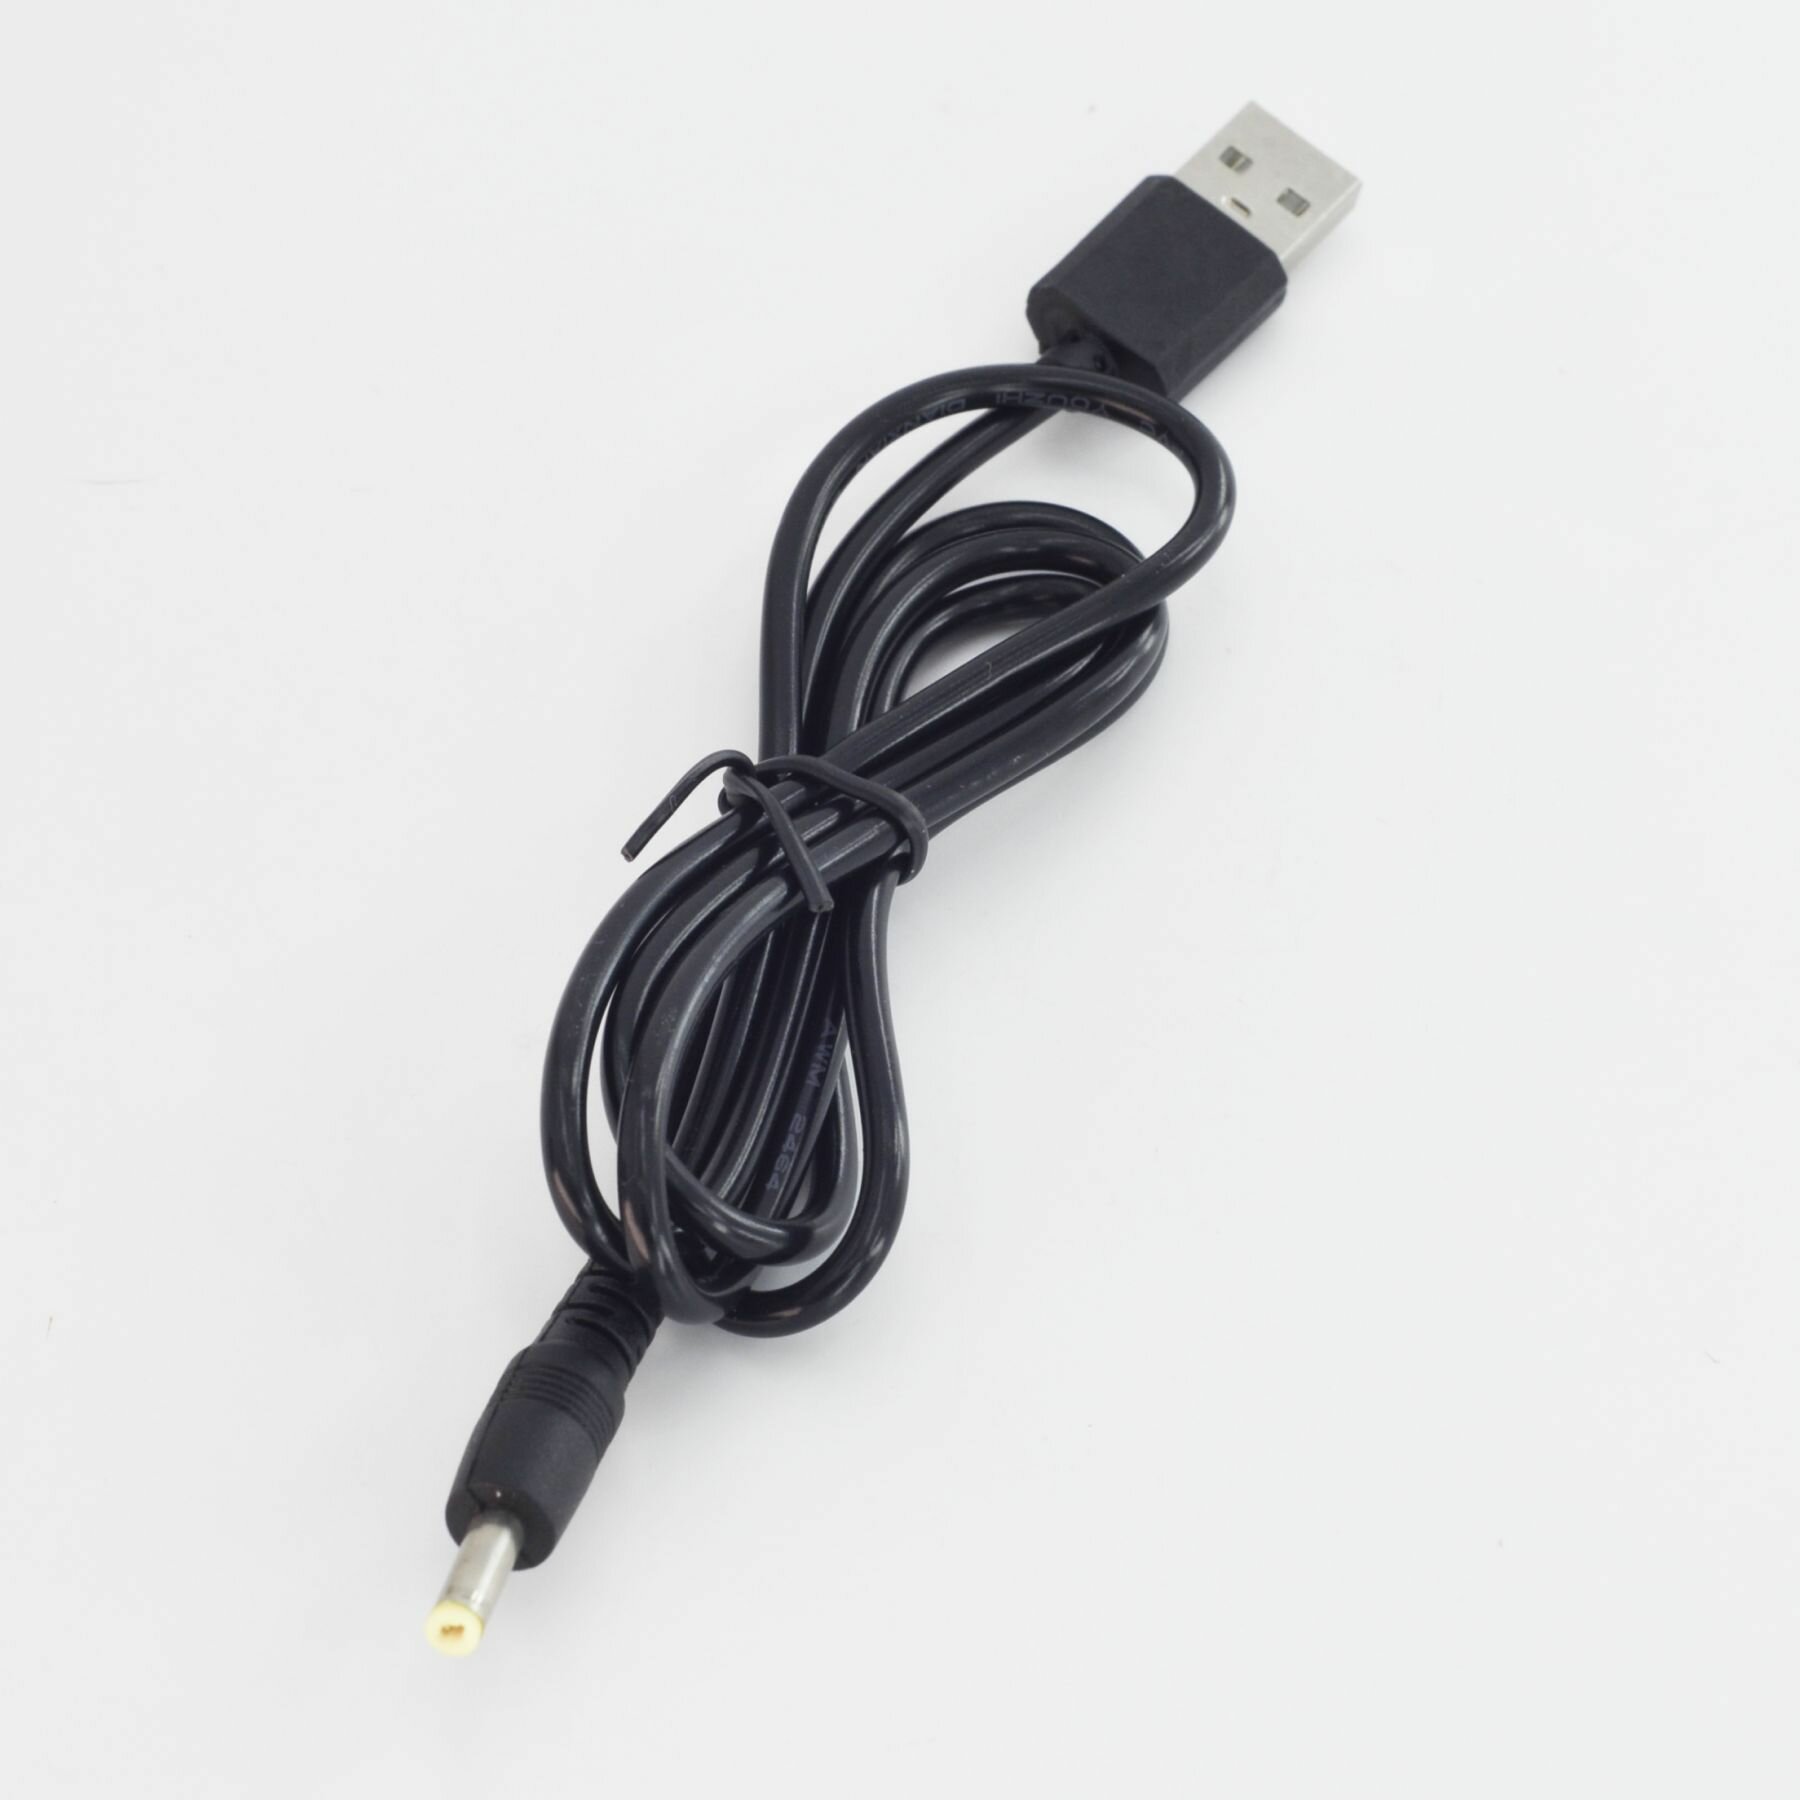 Кабель-переходник USB - 4.0 мм x 1.7 мм для приставок Sony PSP цифровой книги Sony маршрутизаторов роутеров